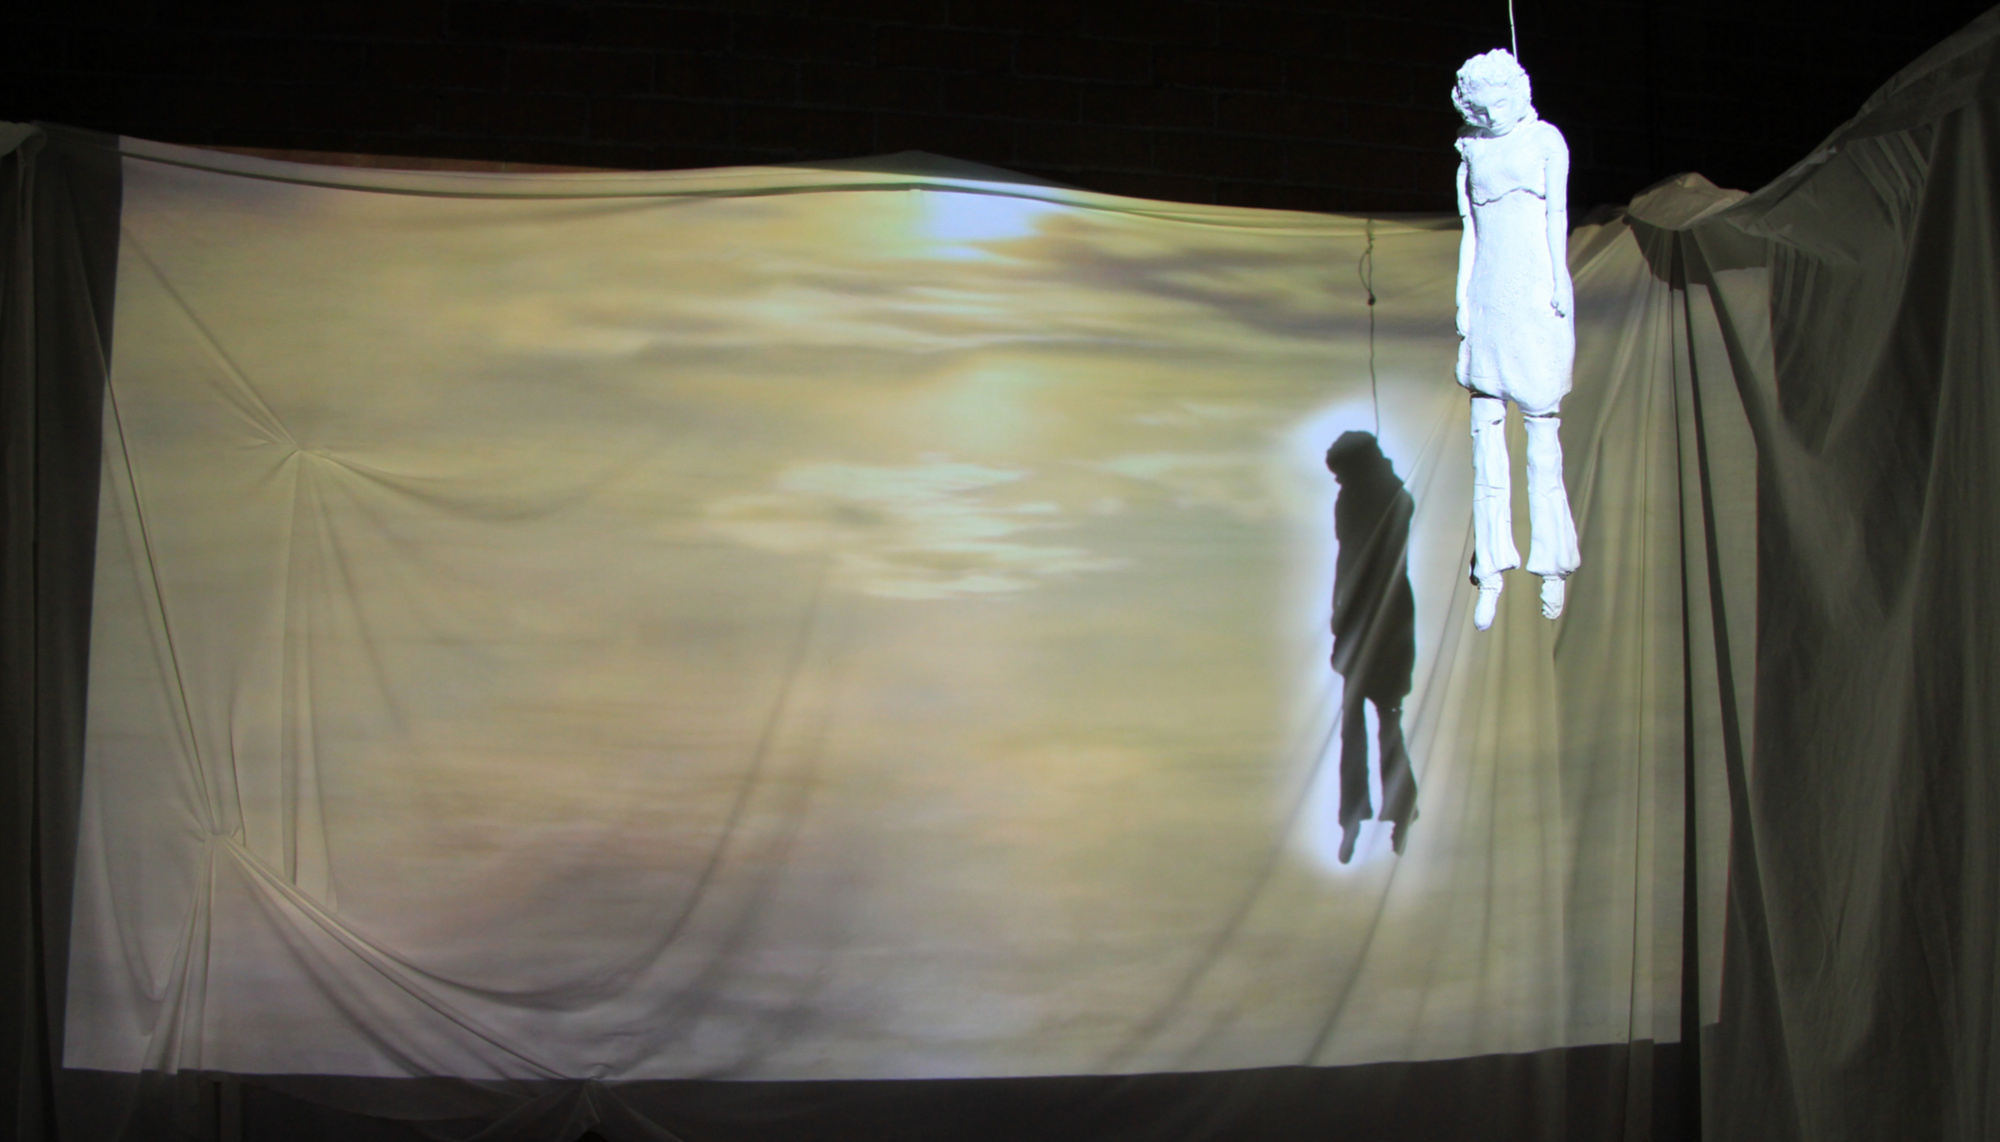 L'art tragique - Projection vidéo sur sculpture et draps et art sonore - Sandra Caissy, l'artiste